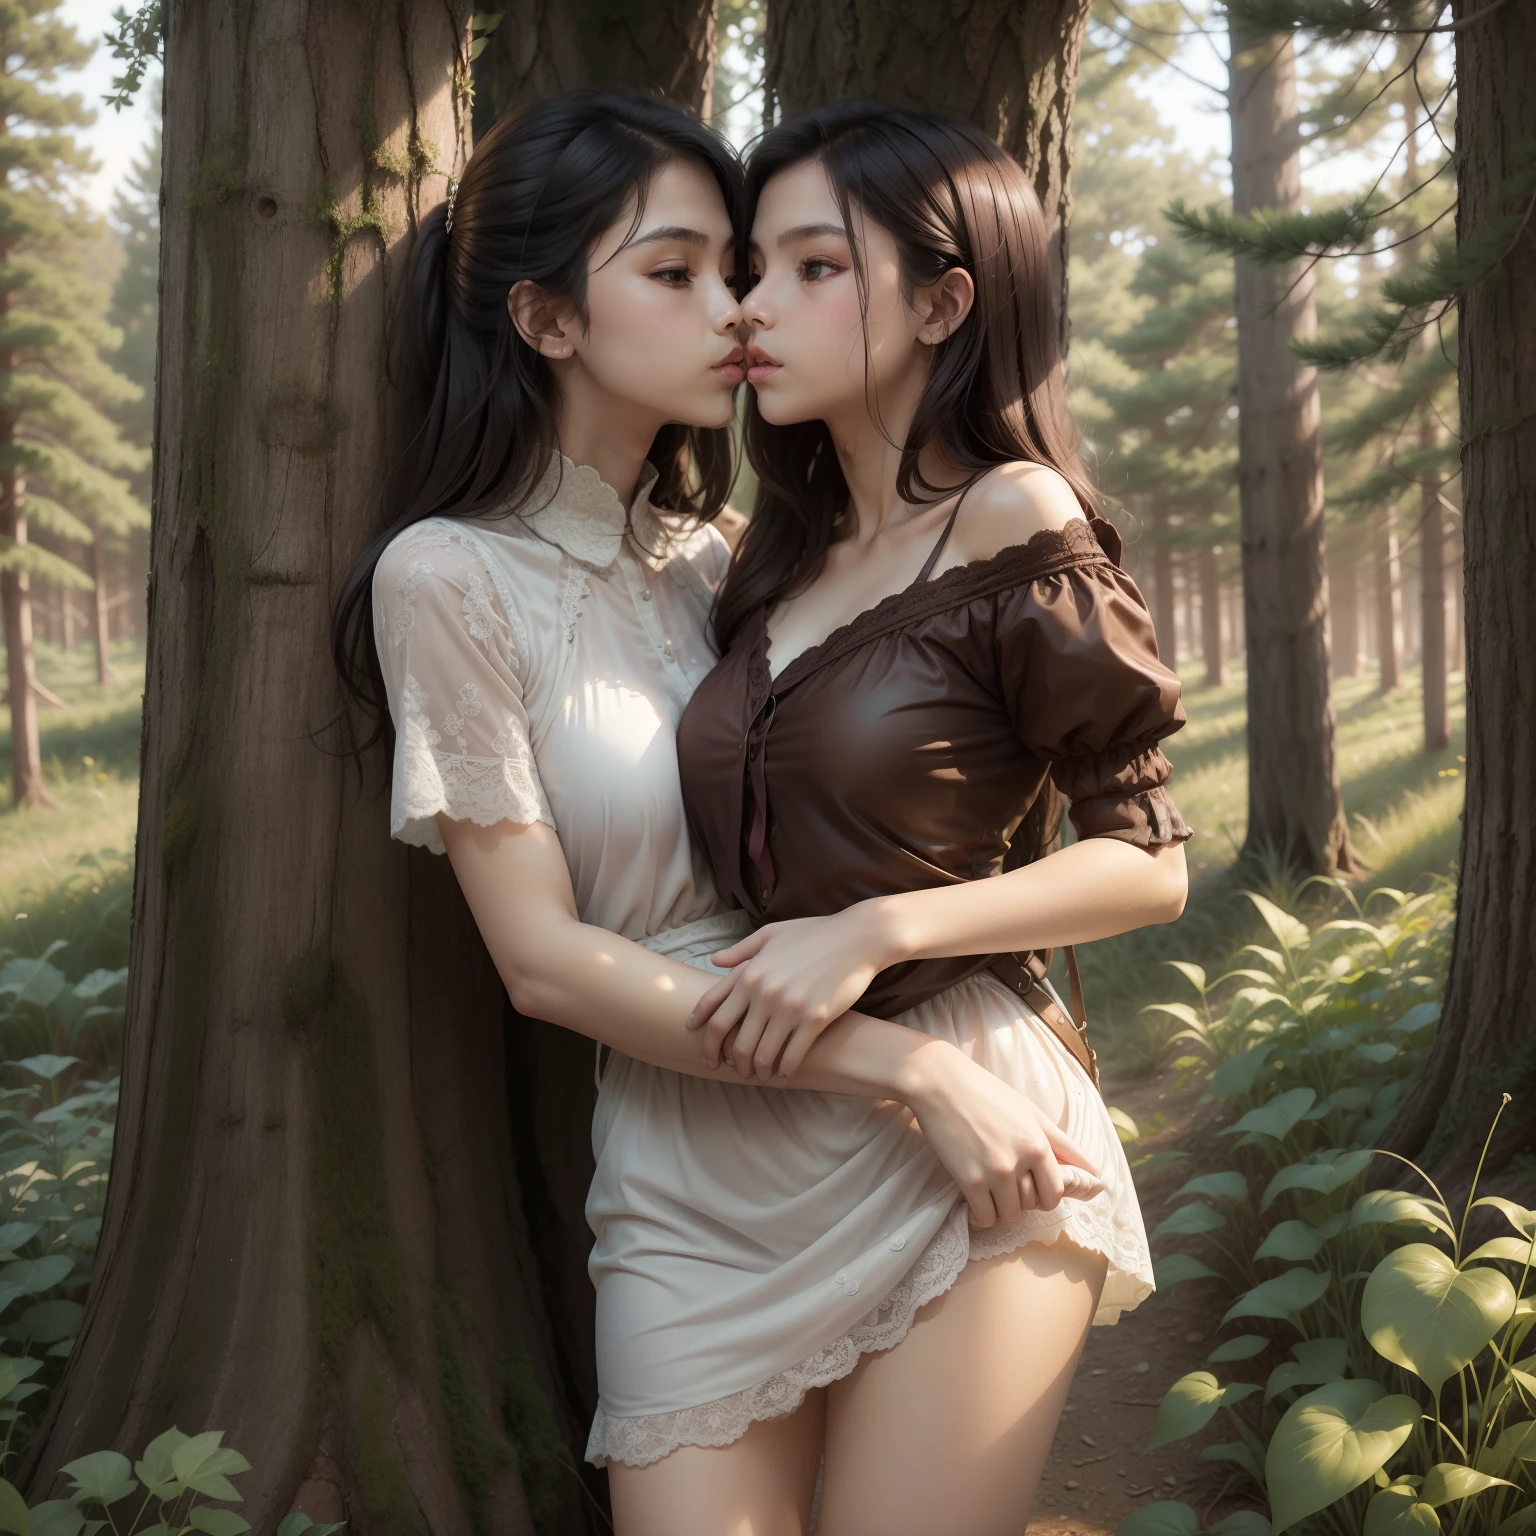 親吻騎士少女抱著公主一起森林雨, (两个头), 全身